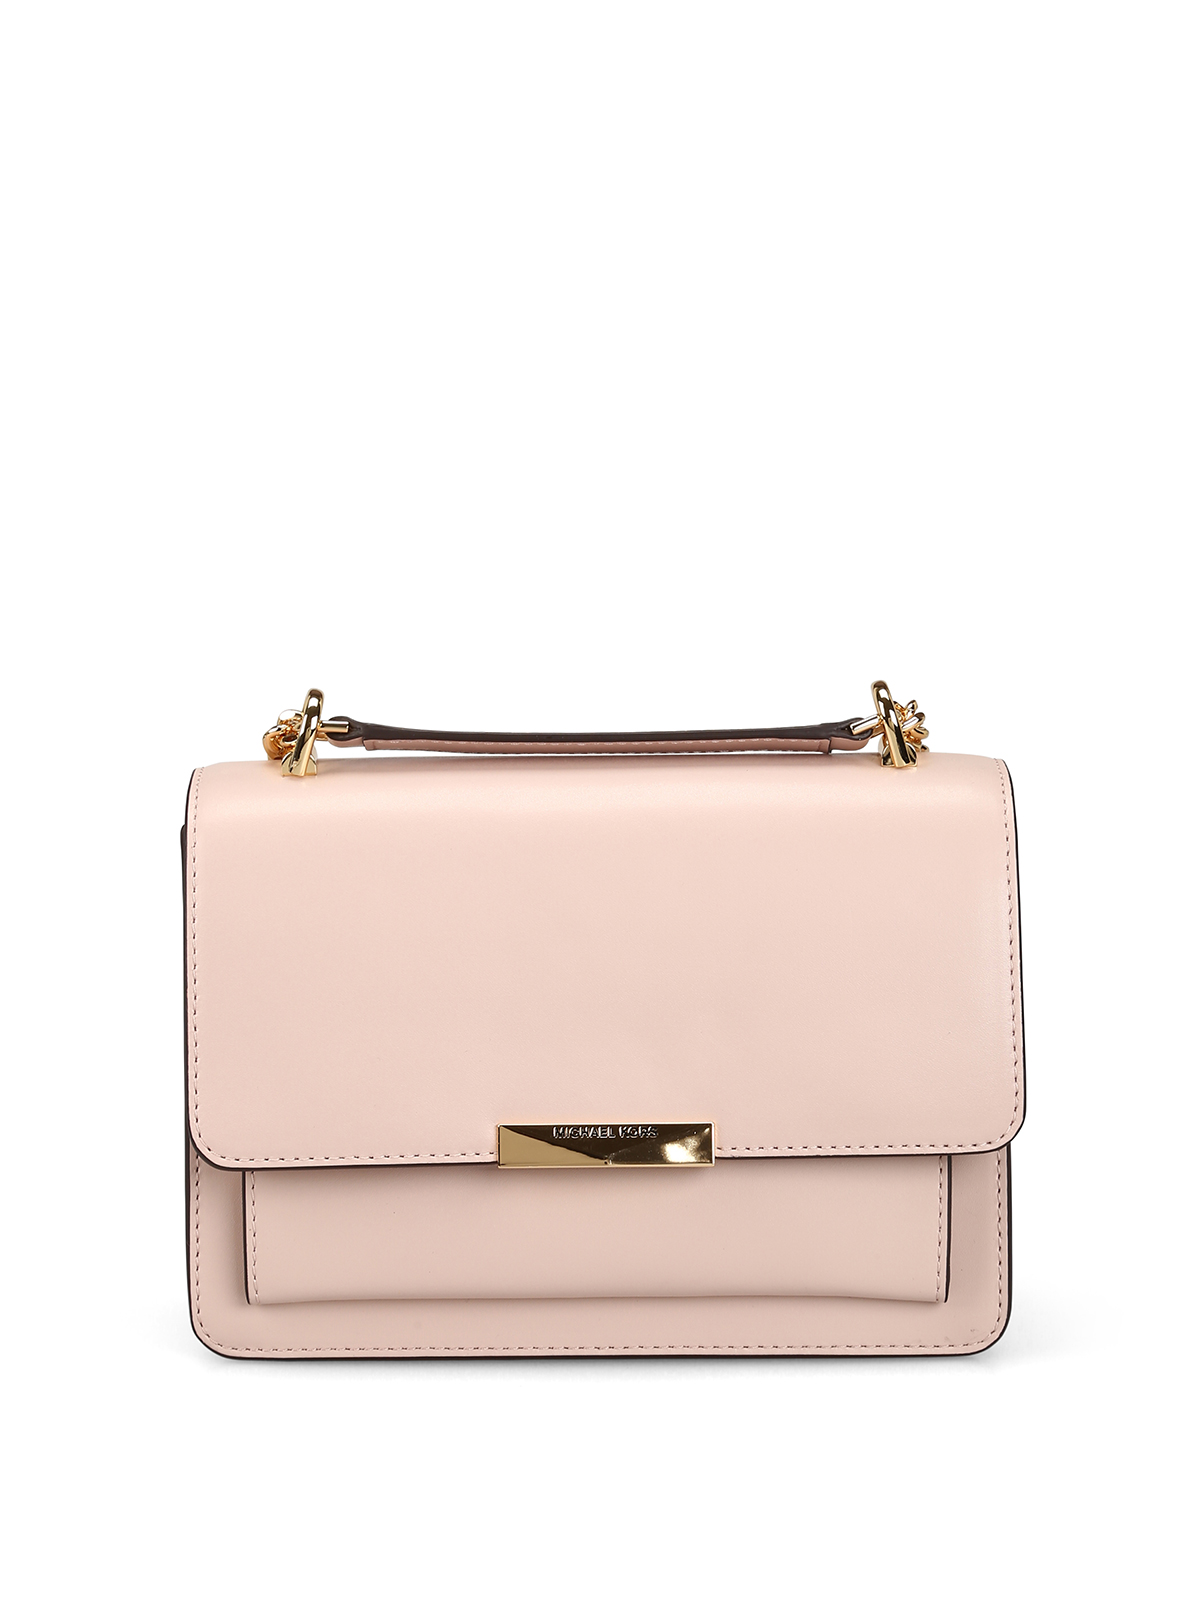 Shoulder bags Michael Kors - Jade L light pink smooth leather bag -  30S9GJ4L9L187